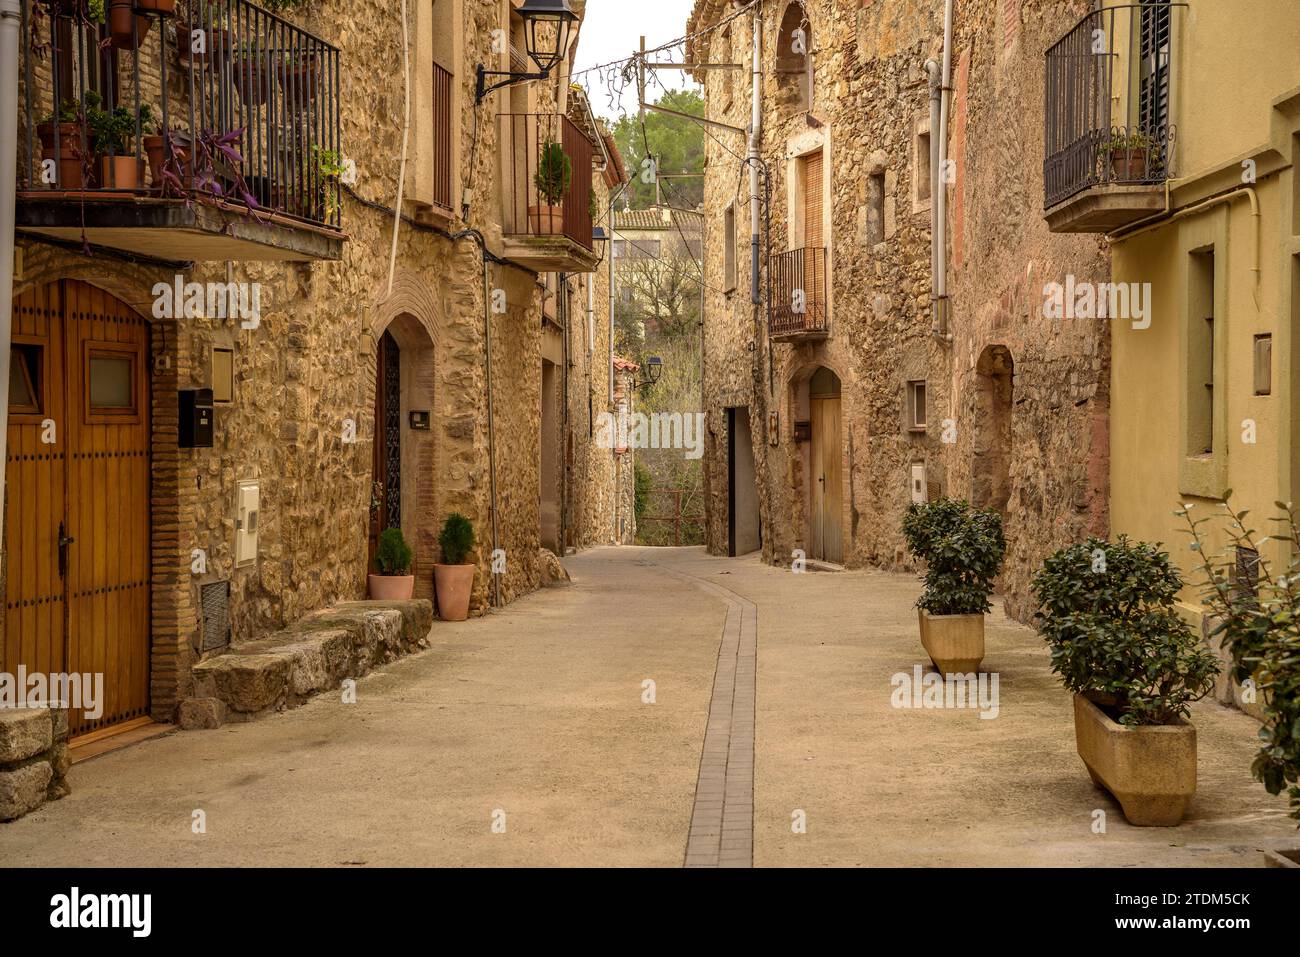 Una strada nel villaggio di Terrades in una nuvolosa mattinata autunnale (Alt Empordà, Girona, Catalogna, Spagna) ESP: Una calle del pueblo de Terrades (Gerona) Foto Stock